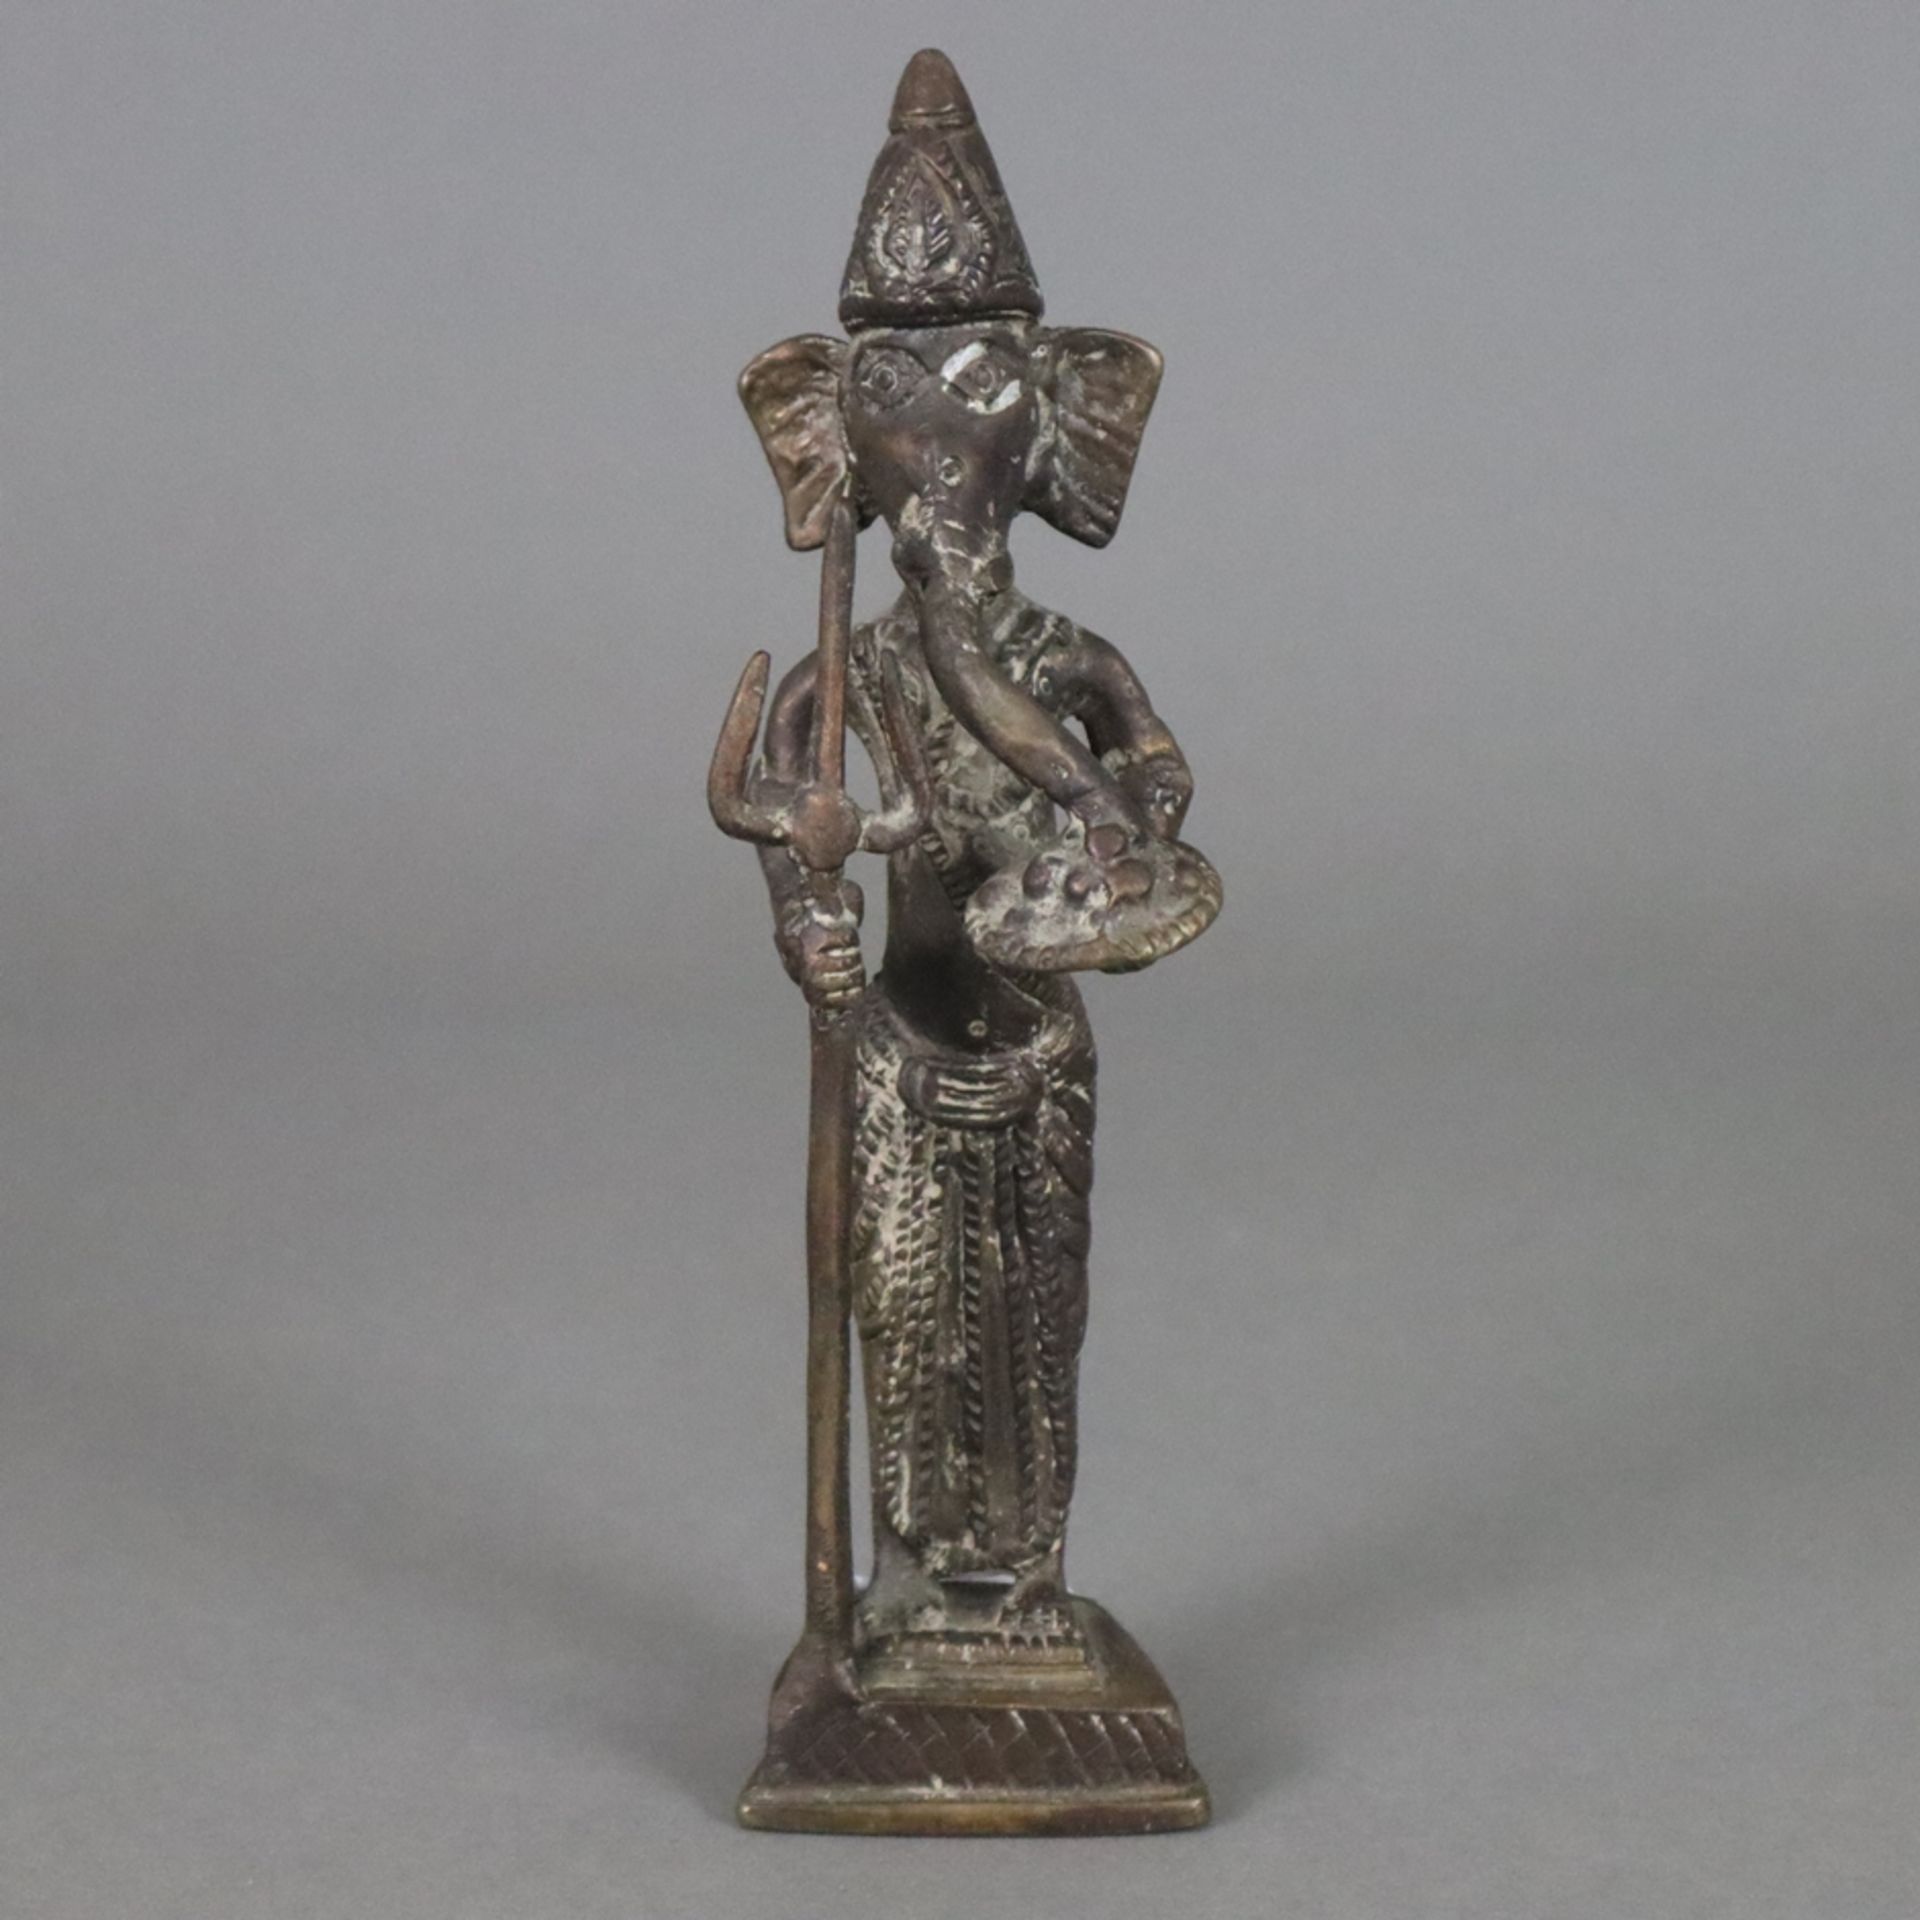 Elefantengott Ganesha - wohl Tibet/Nepal, Bronze, braun patiniert, stehende Darstellung mit Zepter 